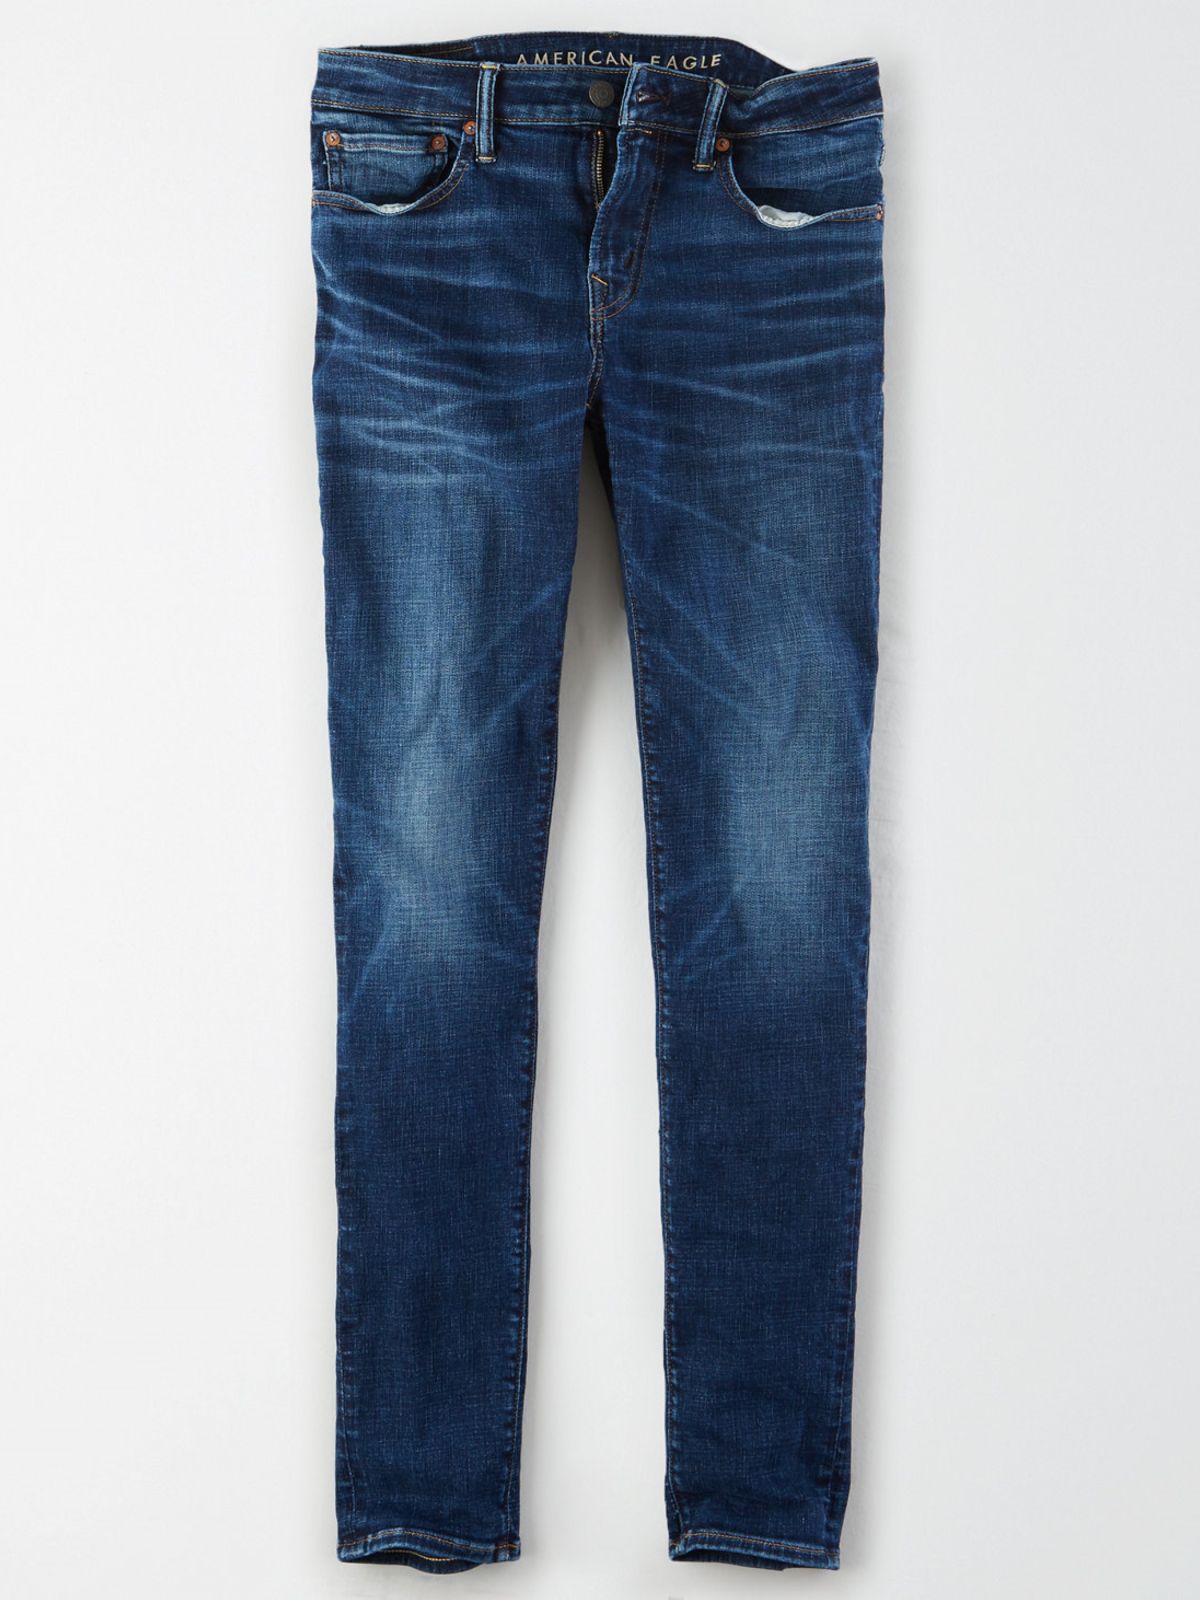  ג'ינס בגזרת Skinny בסגנון ווש של AMERICAN EAGLE